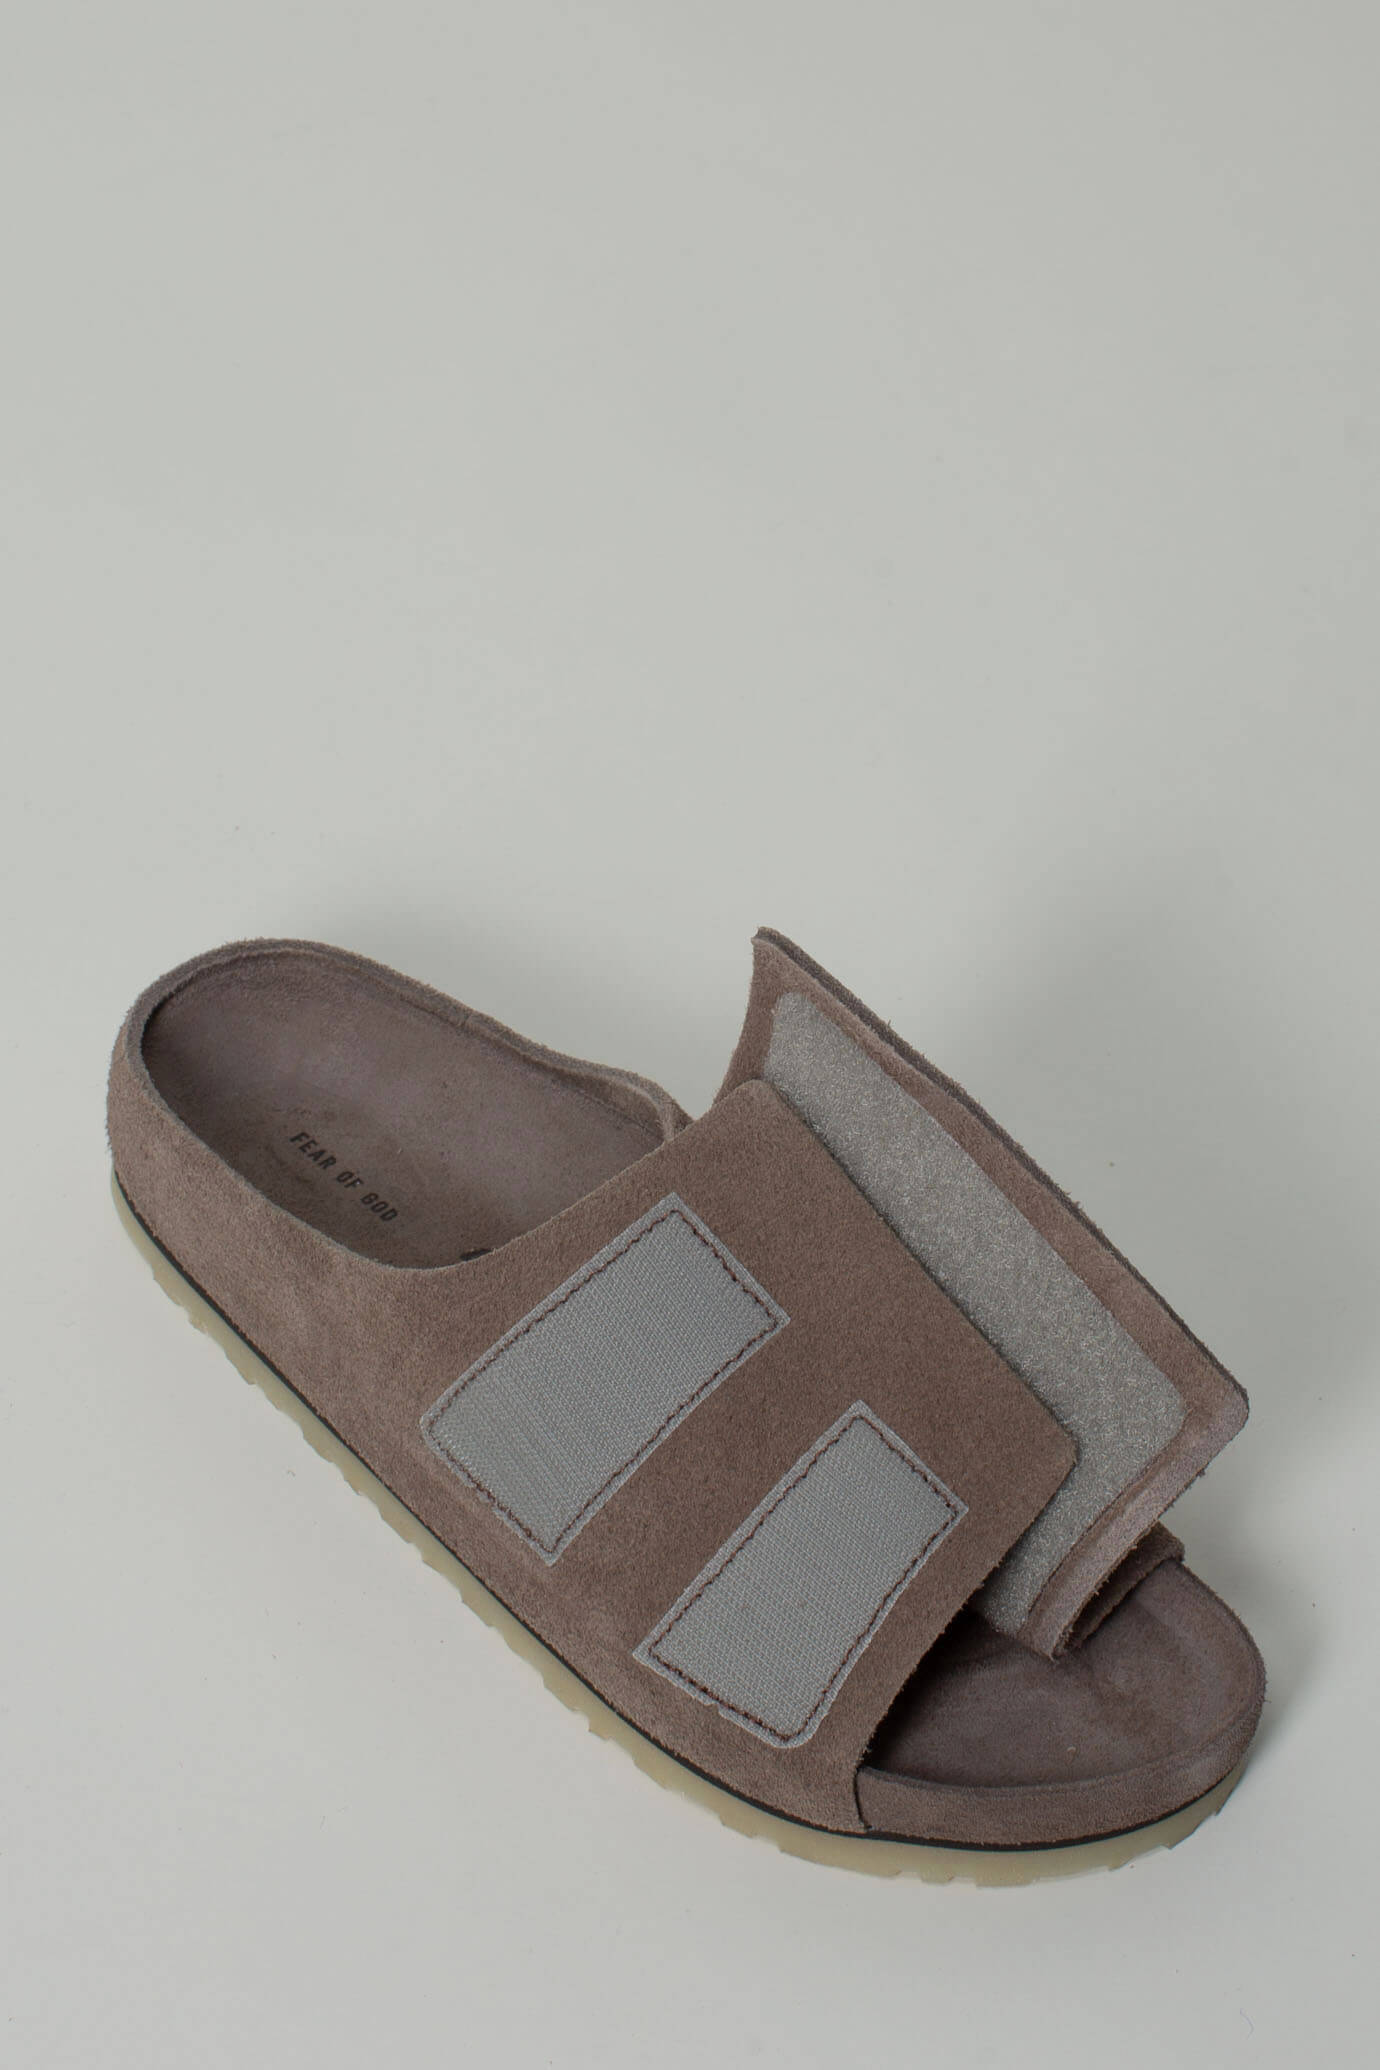 Birkenstock x Fear of God Los Feliz VL Taupe EXQ Men Sandals & Slides Brown in size:42